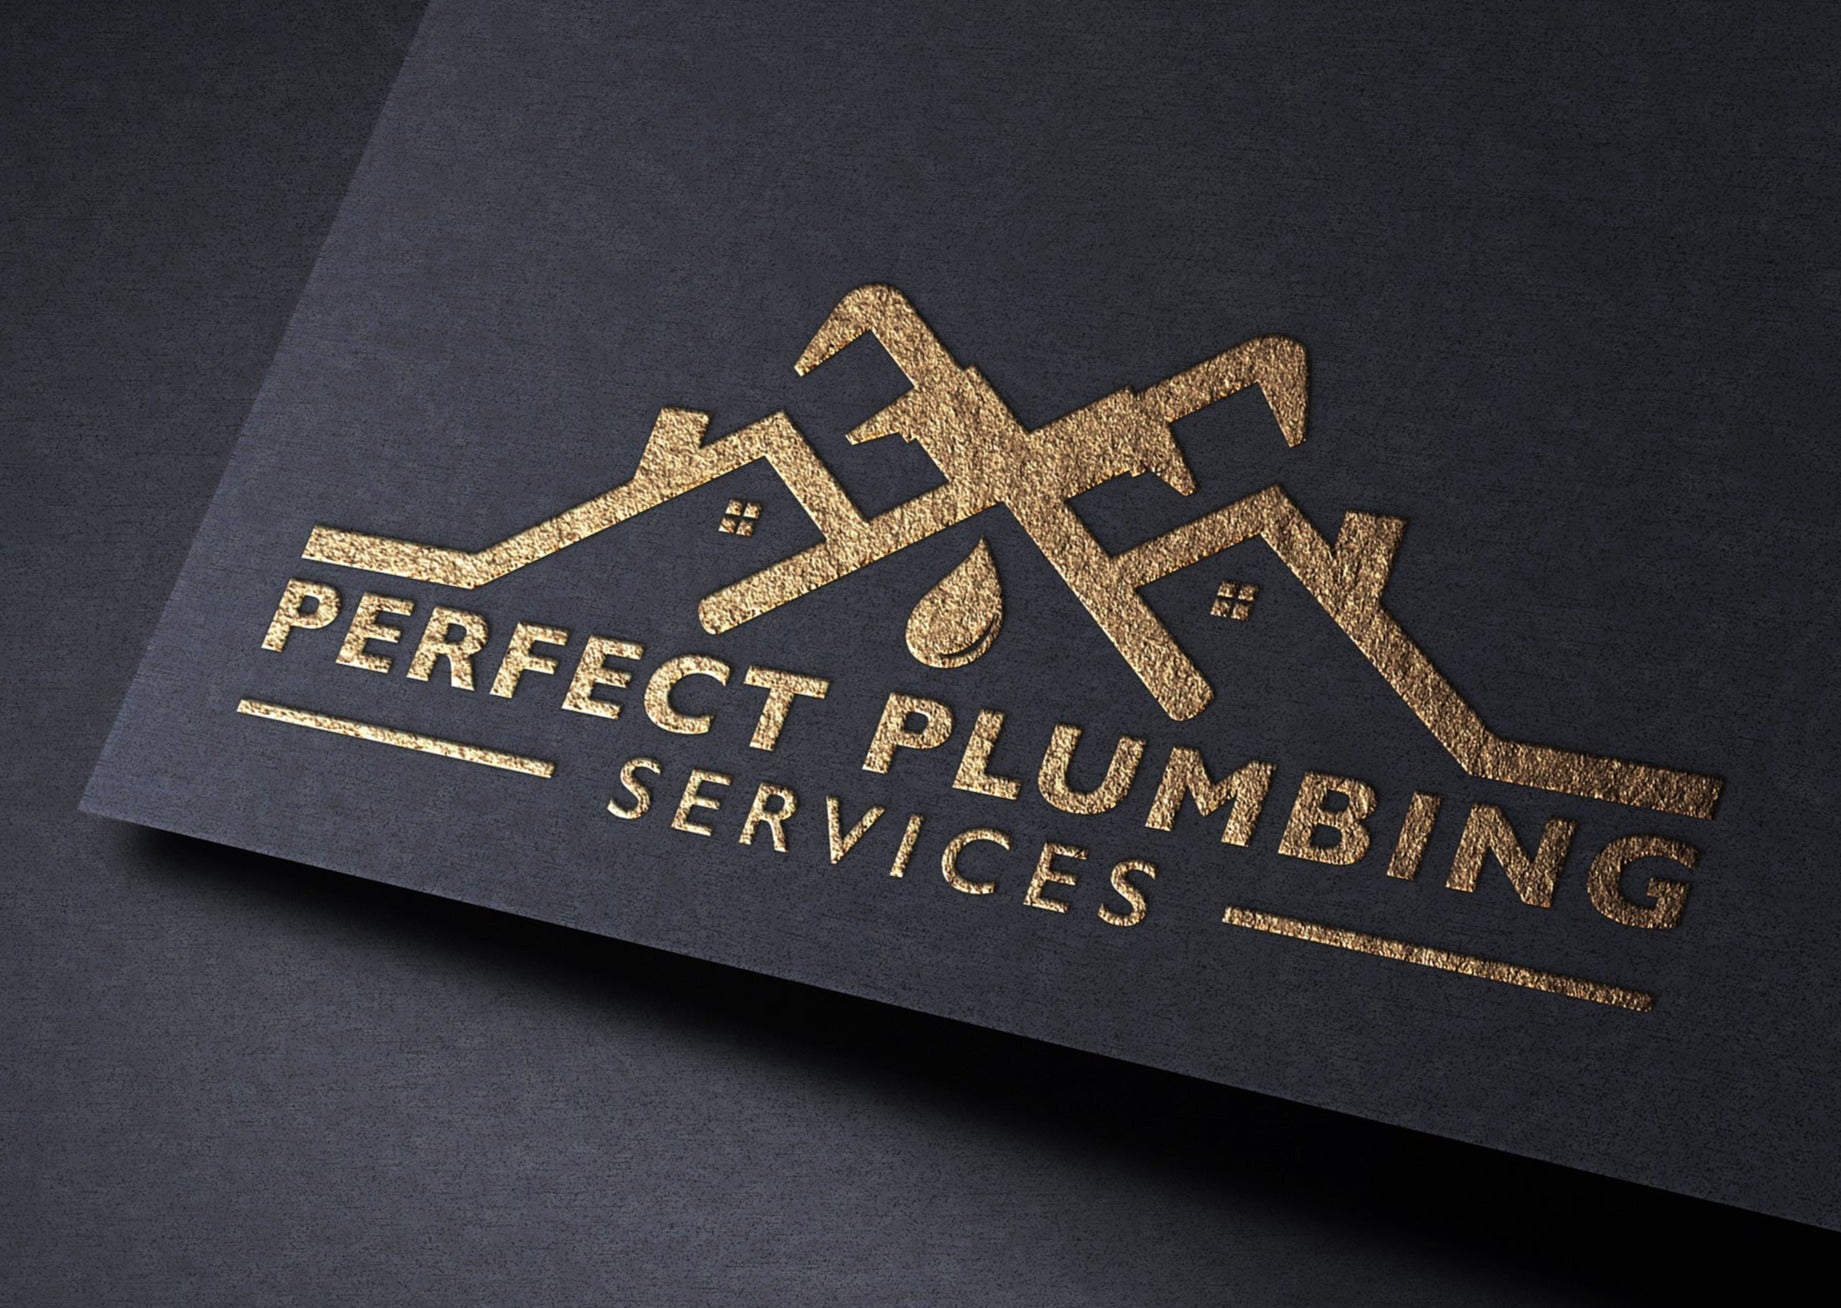 Logo Design - Plumber Design | Plumbing Service | Home Repair | Plumbing Company